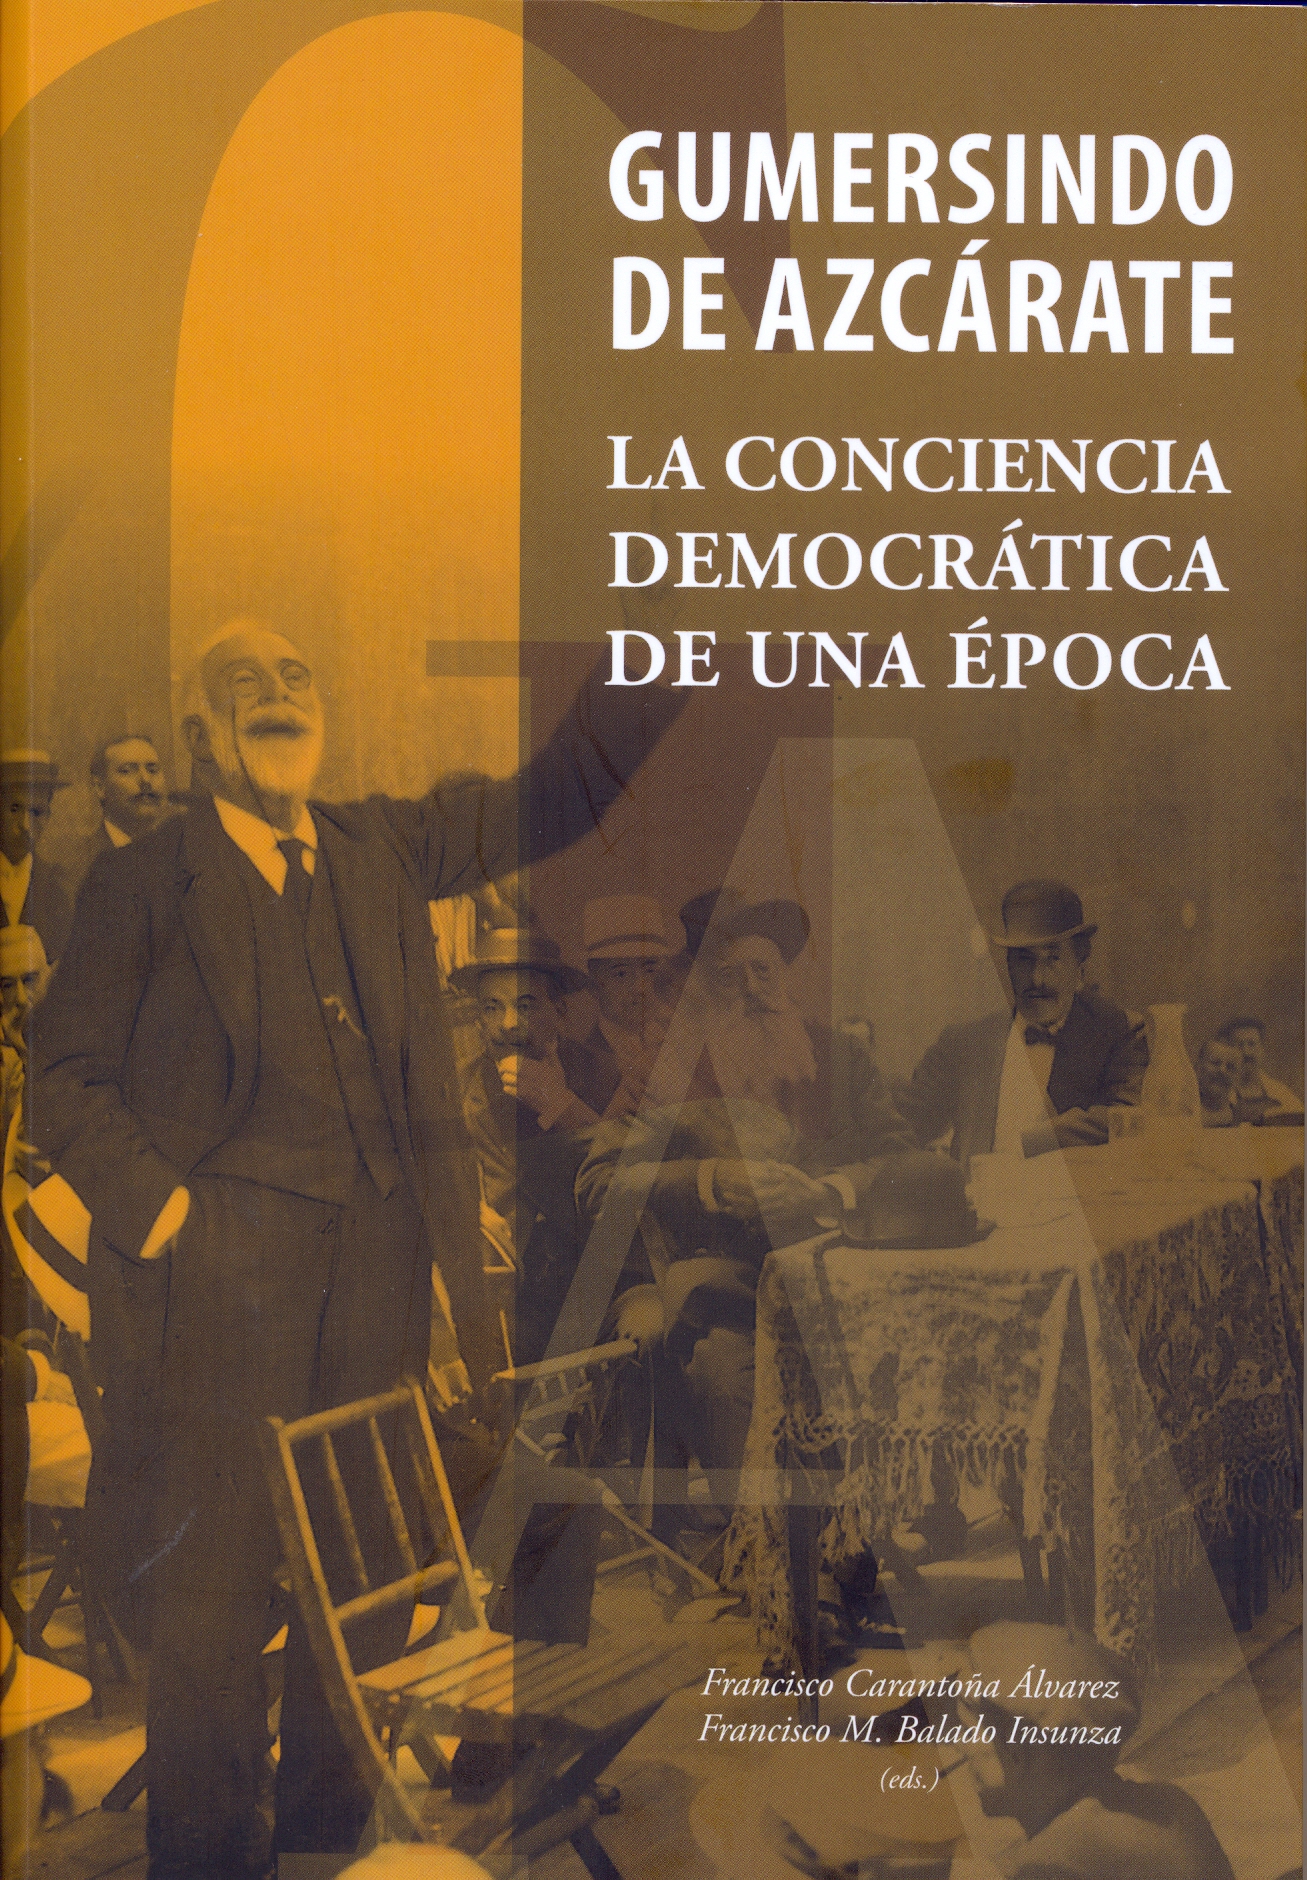 Imagen de portada del libro Gumersindo de Azcárate, la conciencia democrática de una época